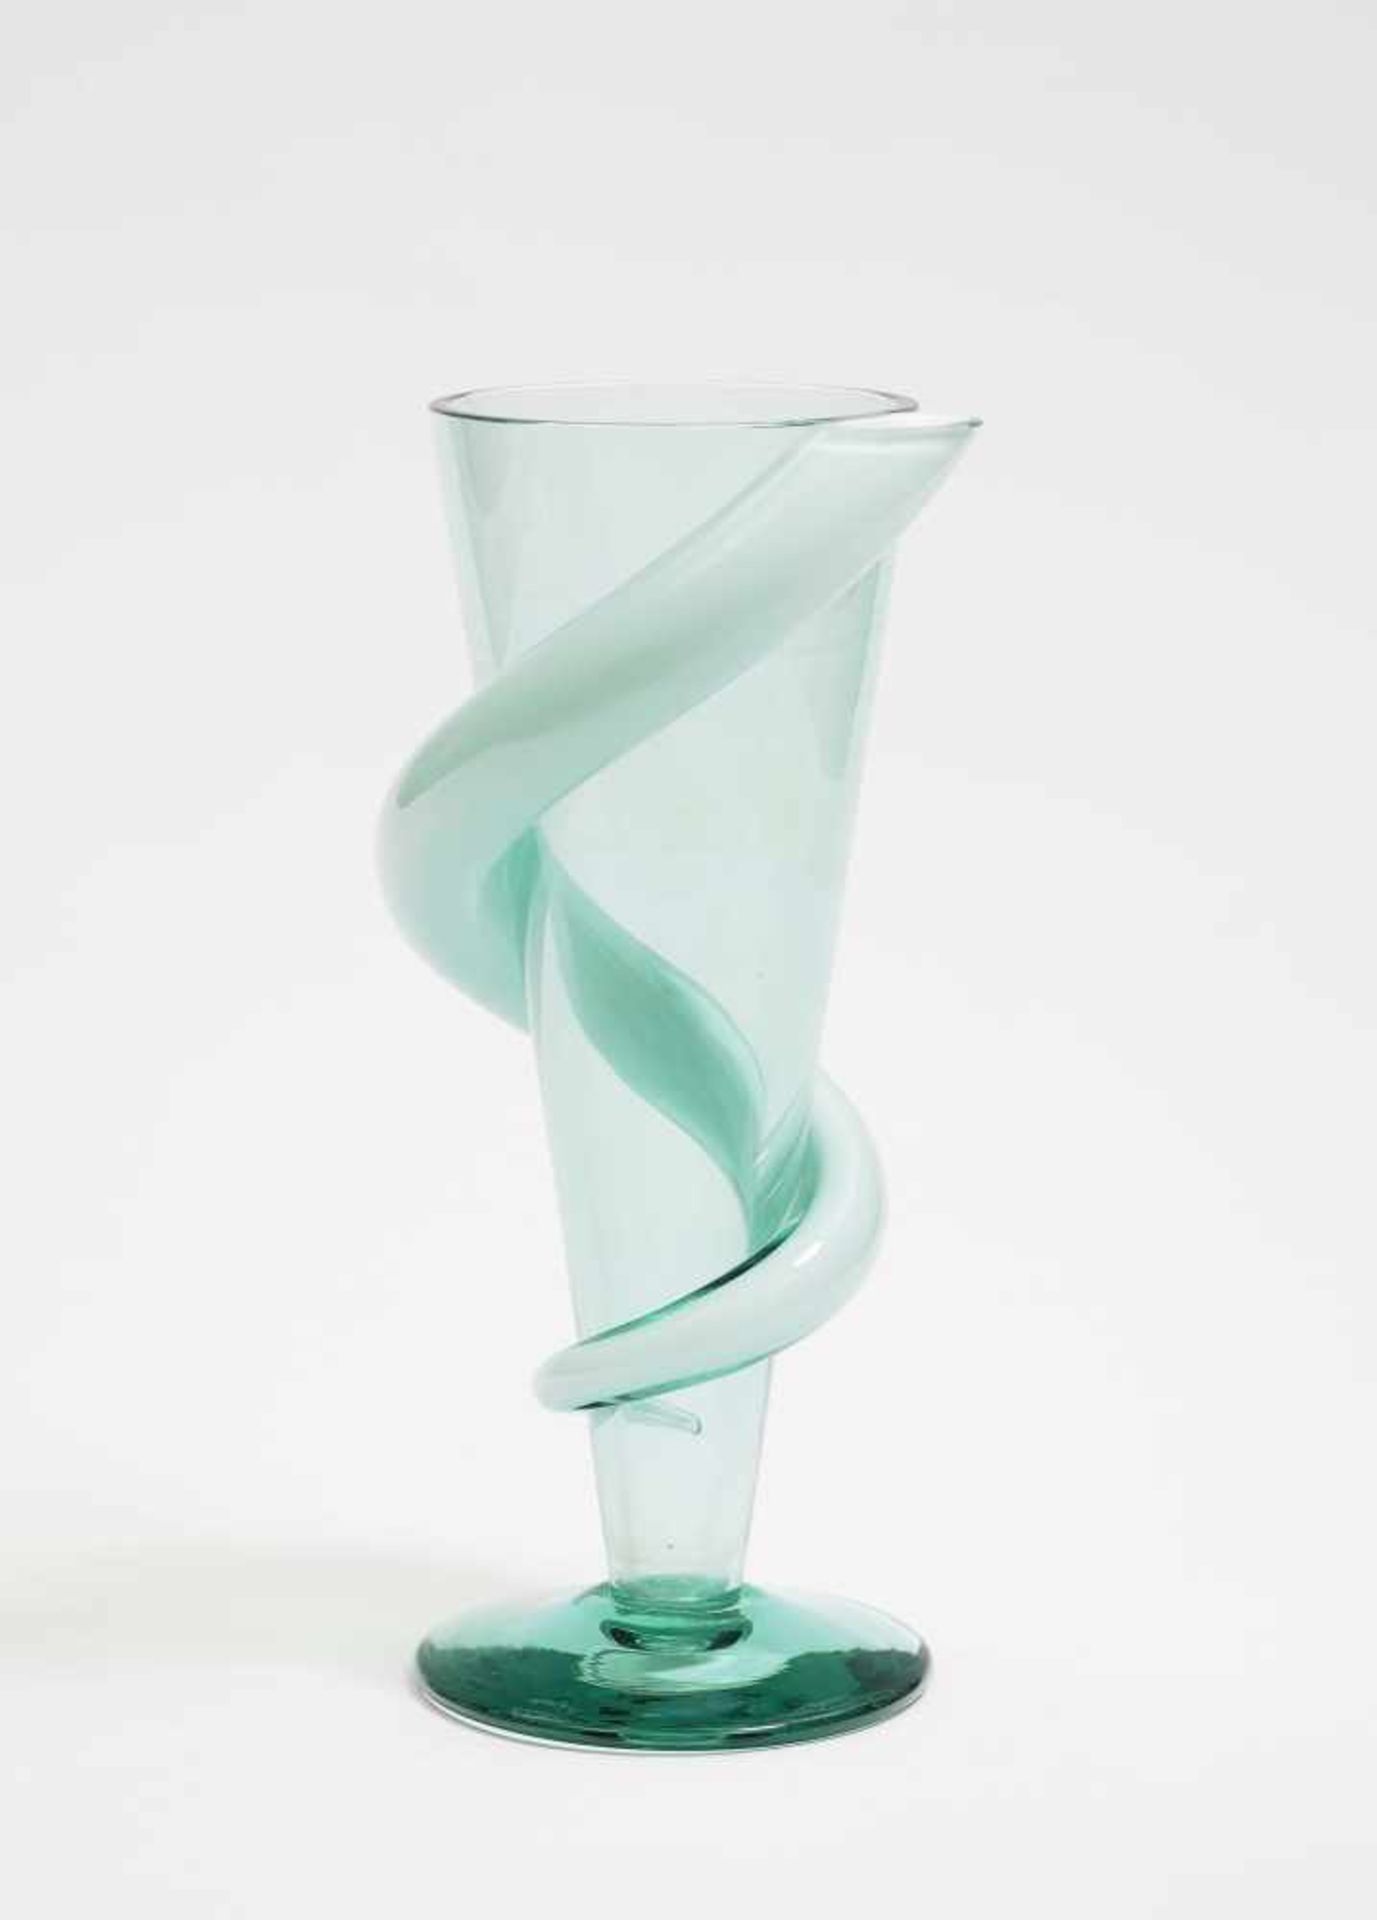 VASE Fa. Rosenthal, Selb Glas, grün getönt. Kelchförmig. Mit aufgelegter röhrenförmiger Spirale.